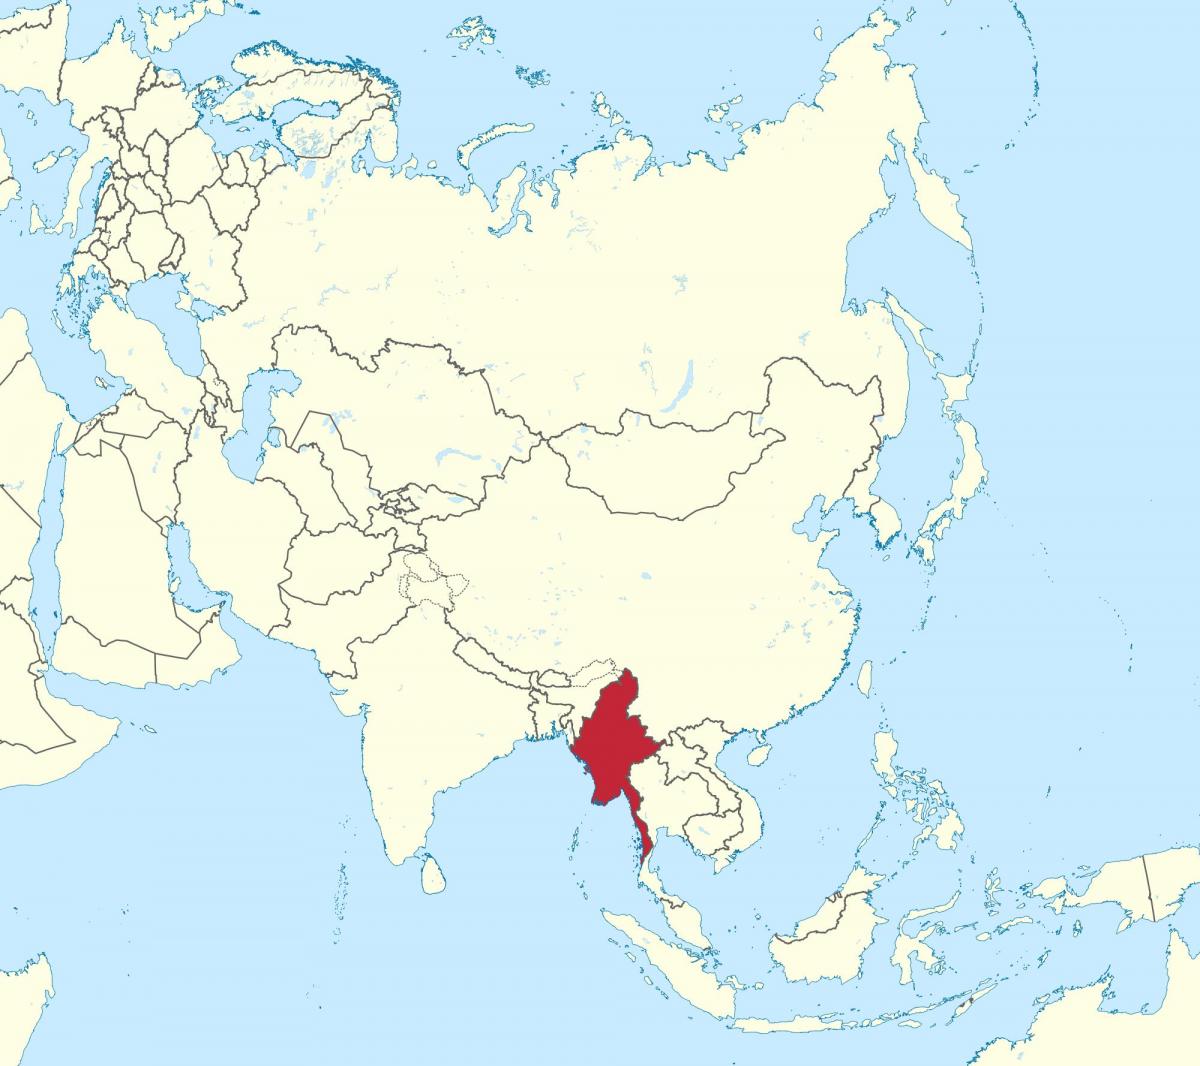 ਸੰਸਾਰ ਦਾ ਨਕਸ਼ਾ, Myanmar ਬਰਮਾ